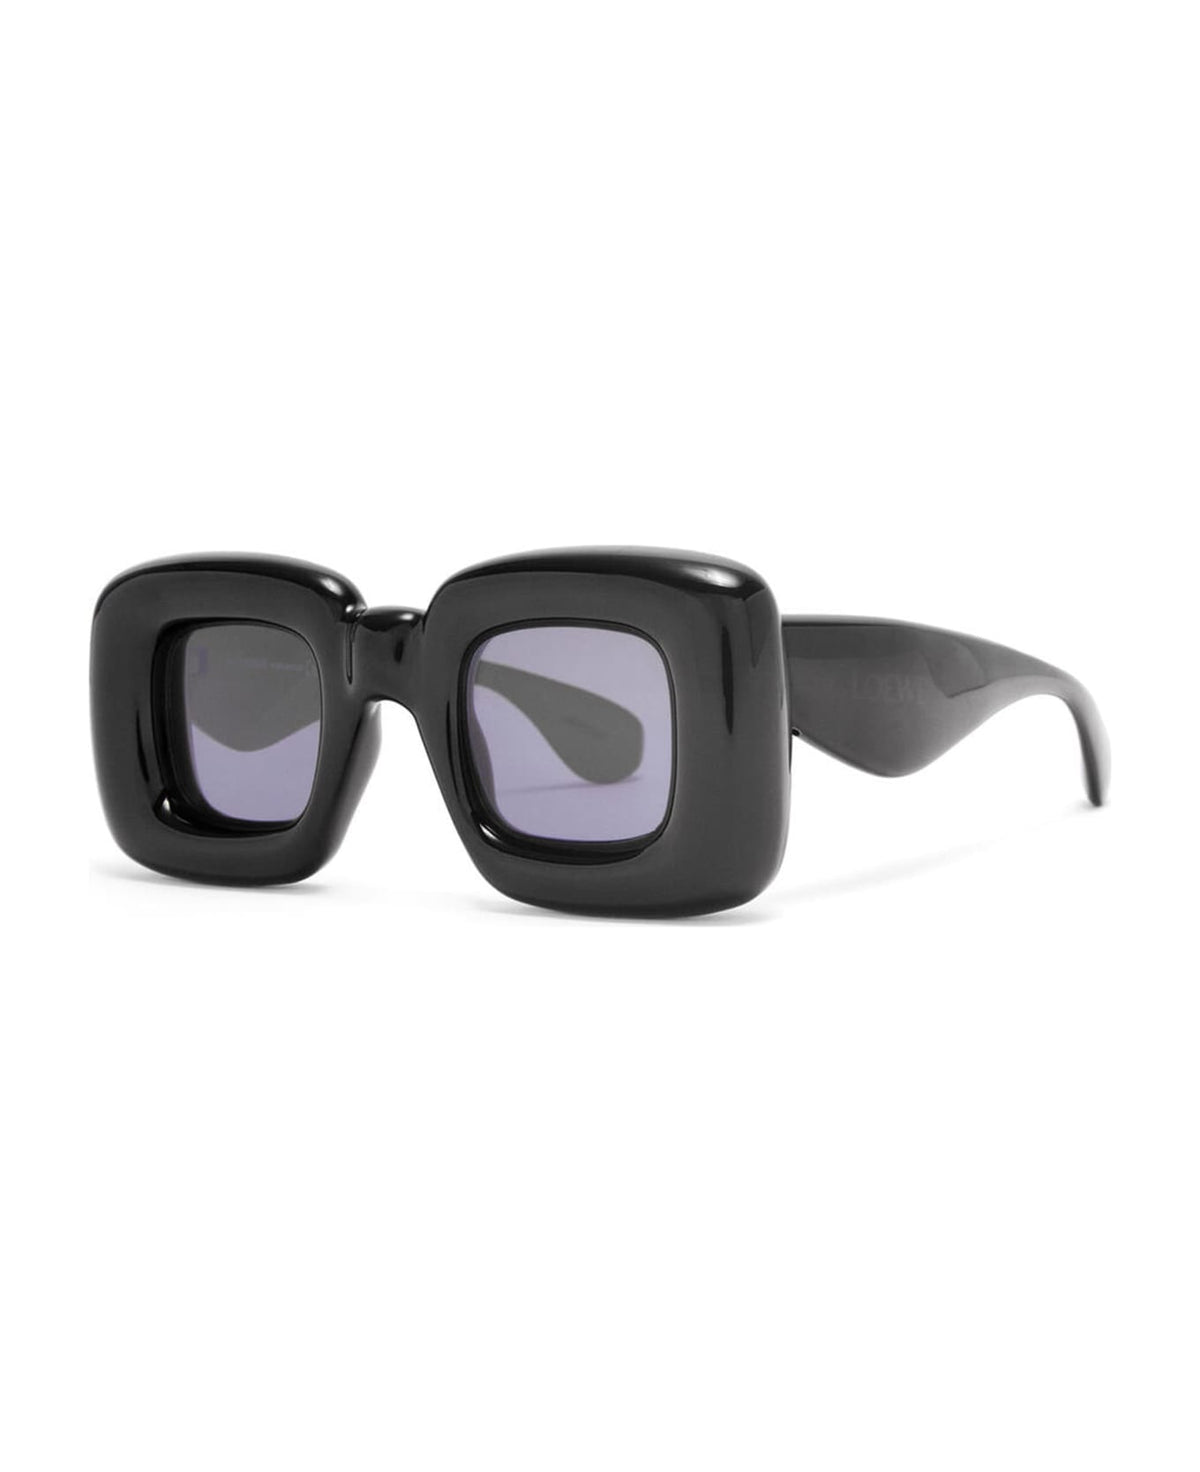 Lw40098i - Black Sunglasses